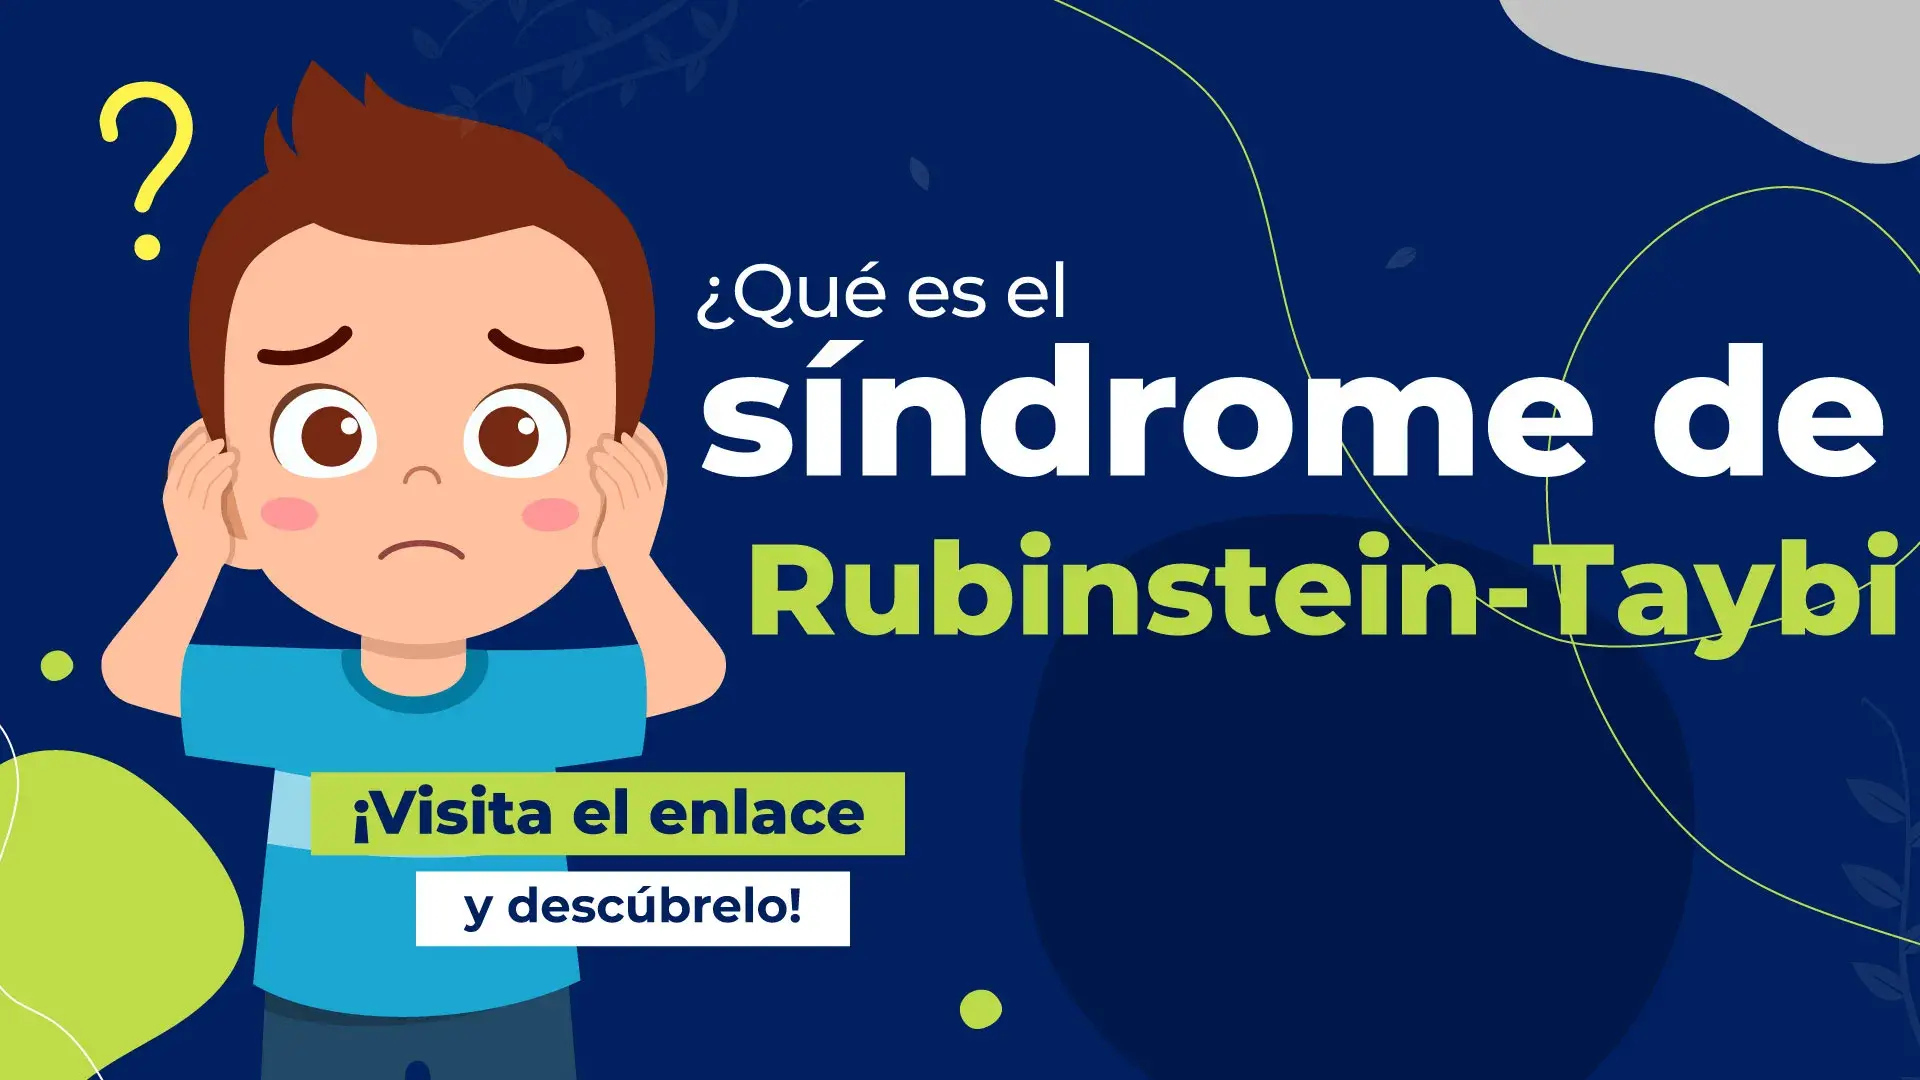 Síndrome de Rubinstein-Taybi: causas, síntomas y tratamiento